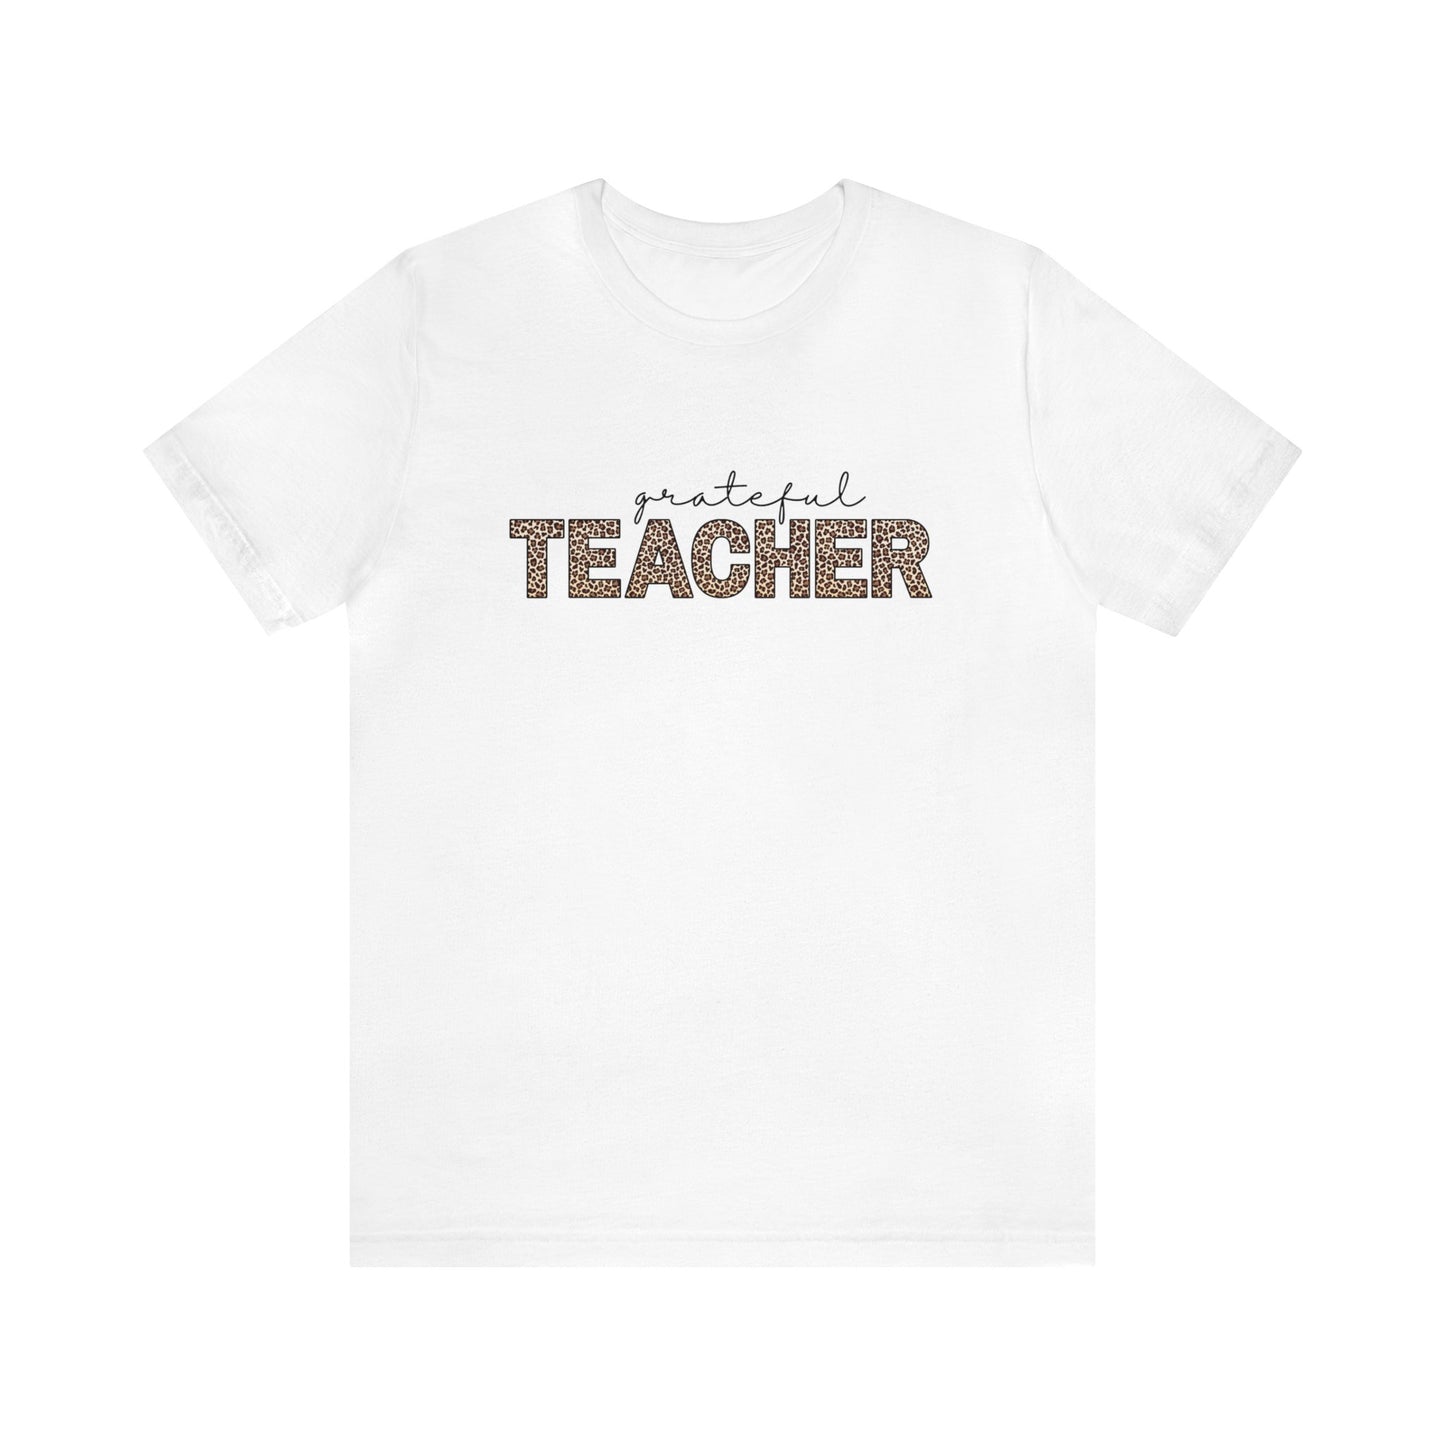 "Grateful Teacher" Teacher T-shirt